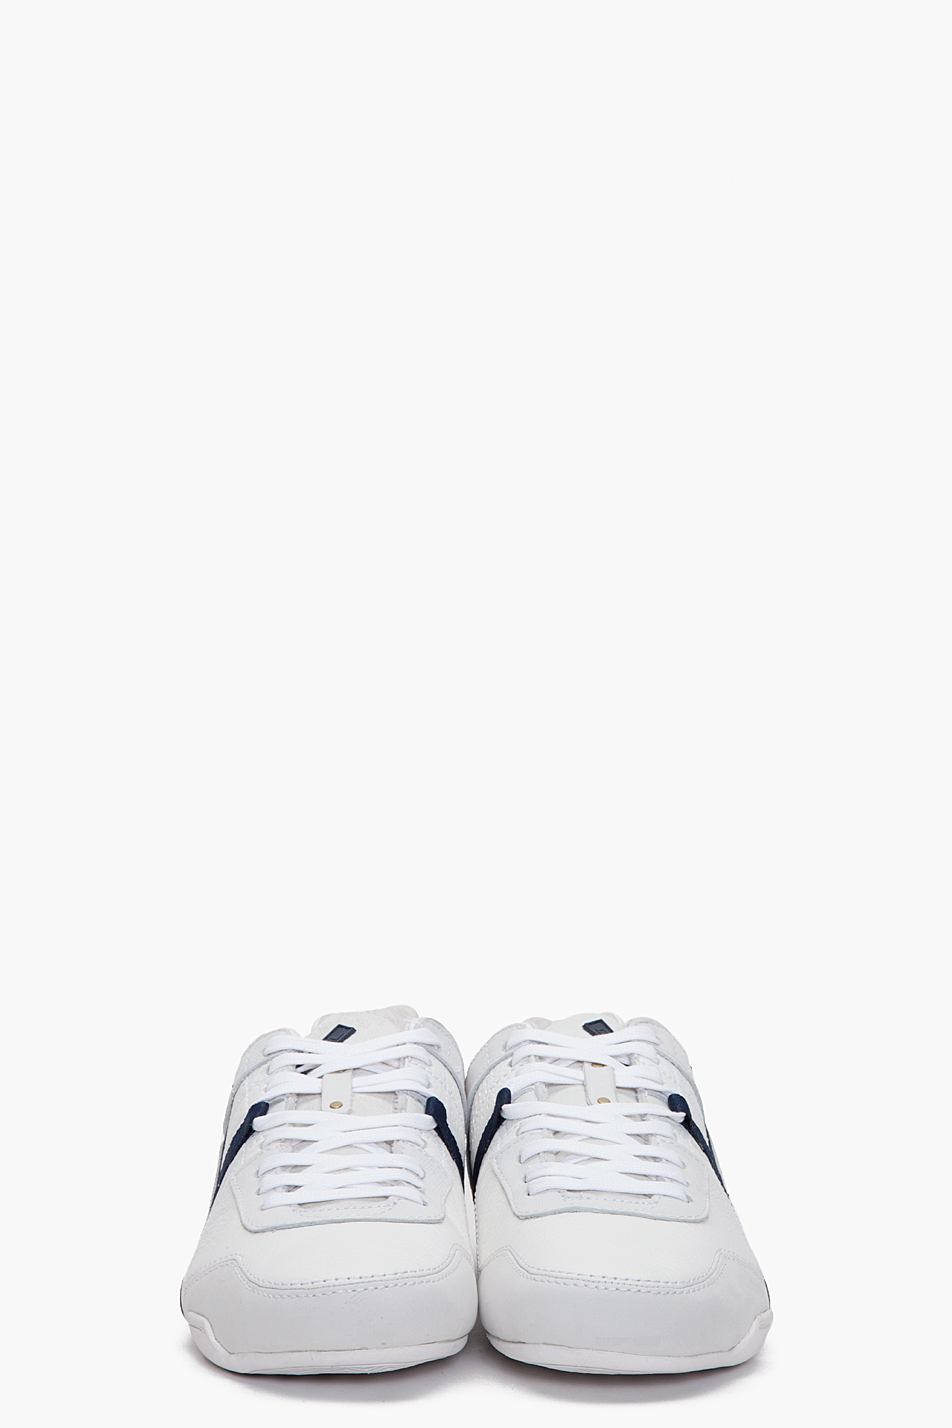 DIESEL Korbin Ii Sneakers in White for Men | Lyst